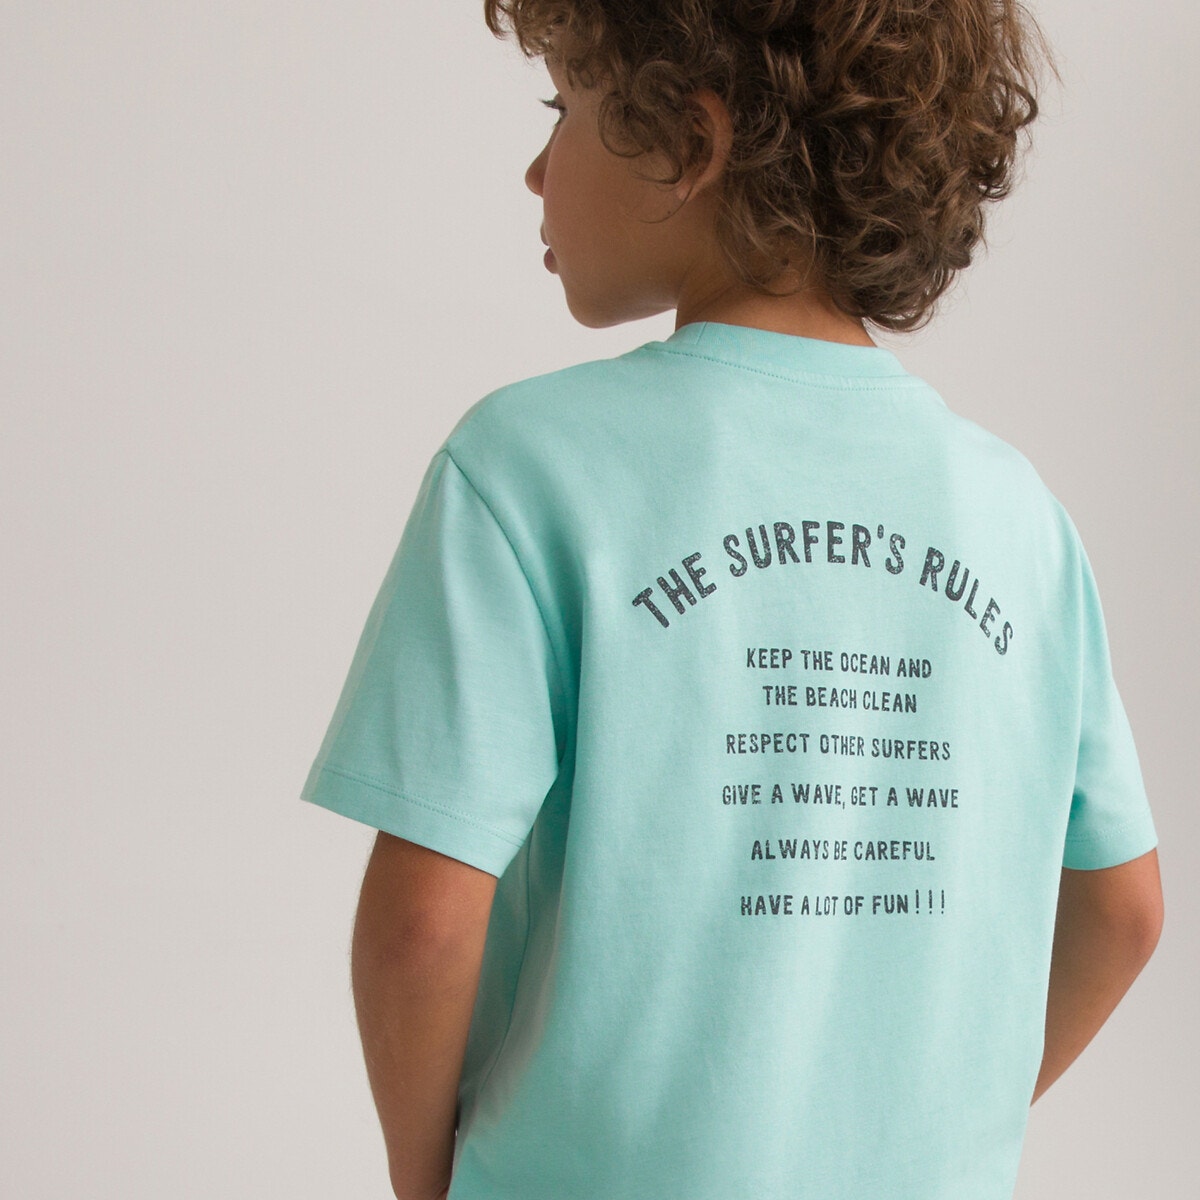 Μόδα > Παιδικά > Αγόρι > T-shirt, πόλο > Κοντά μανίκια Κοντομάνικο T-shirt με μήνυμα στην πλάτη